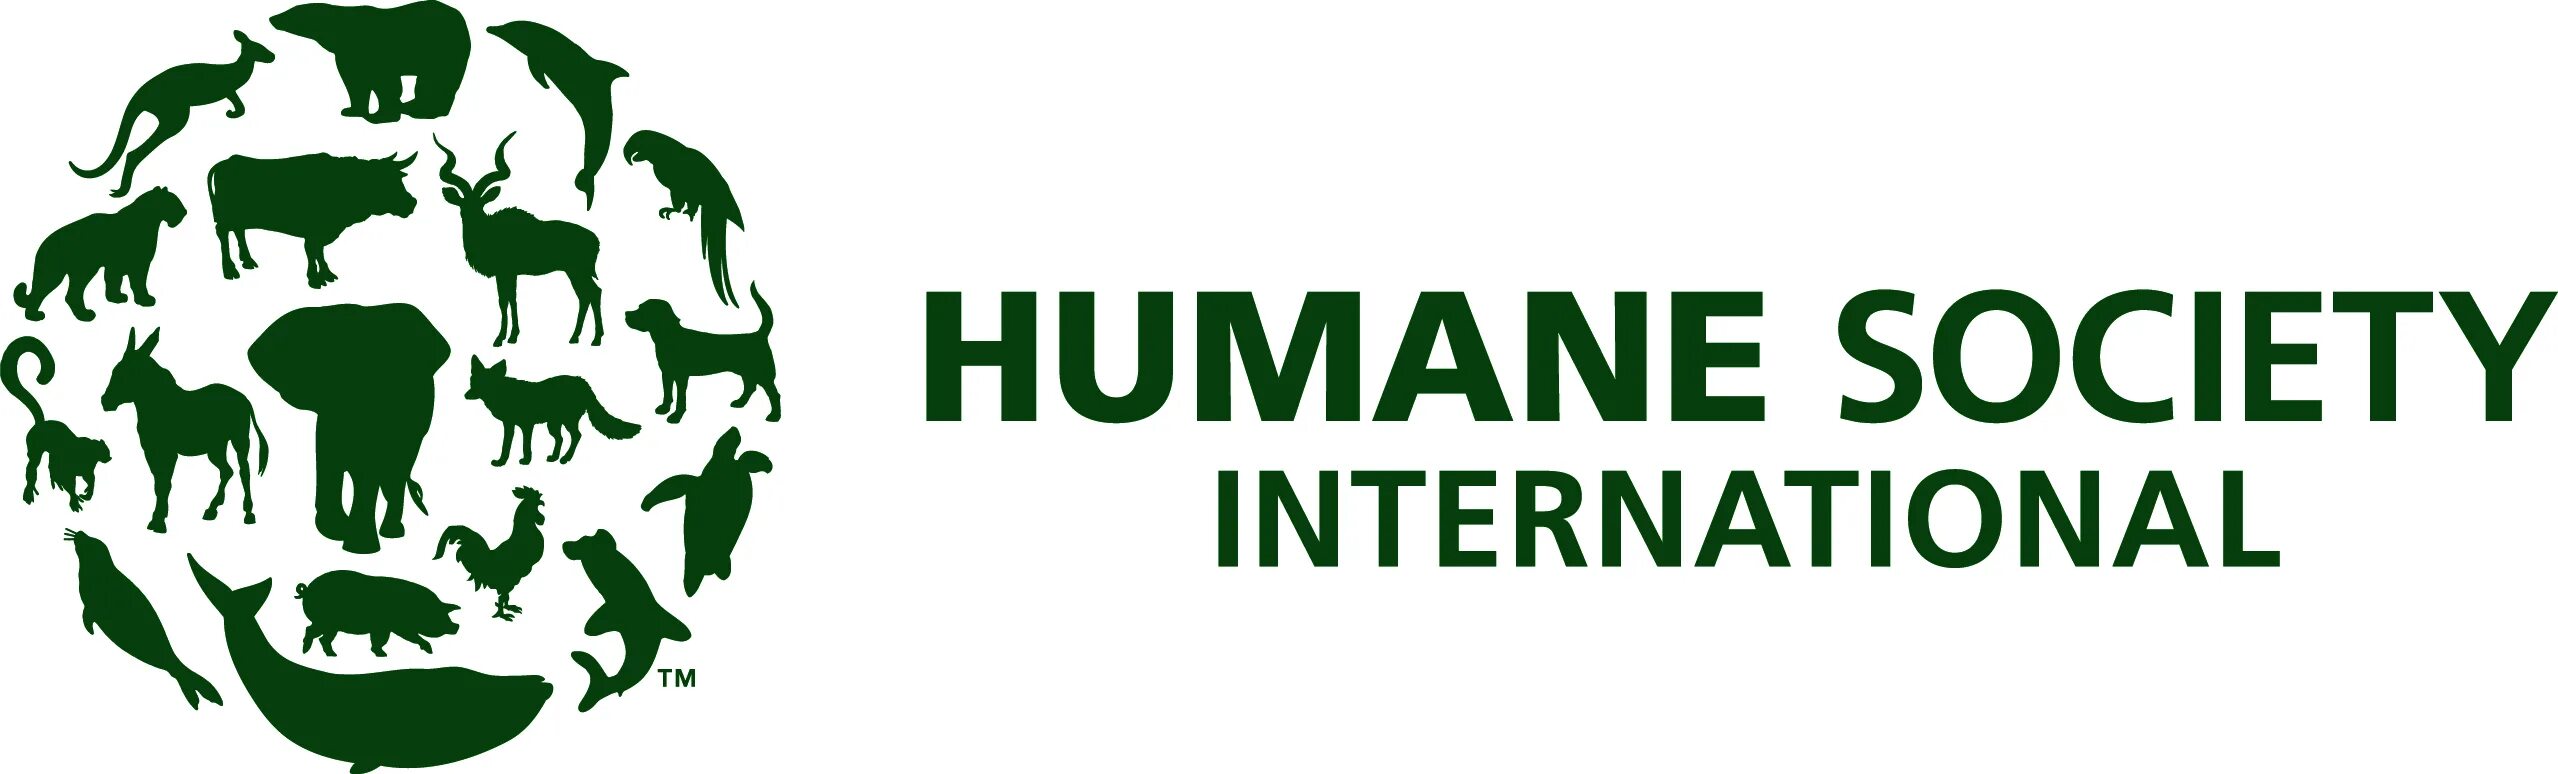 Humane Society International. Humane Society International Australia. Protection International организация. Humane Society International агенты. Human society